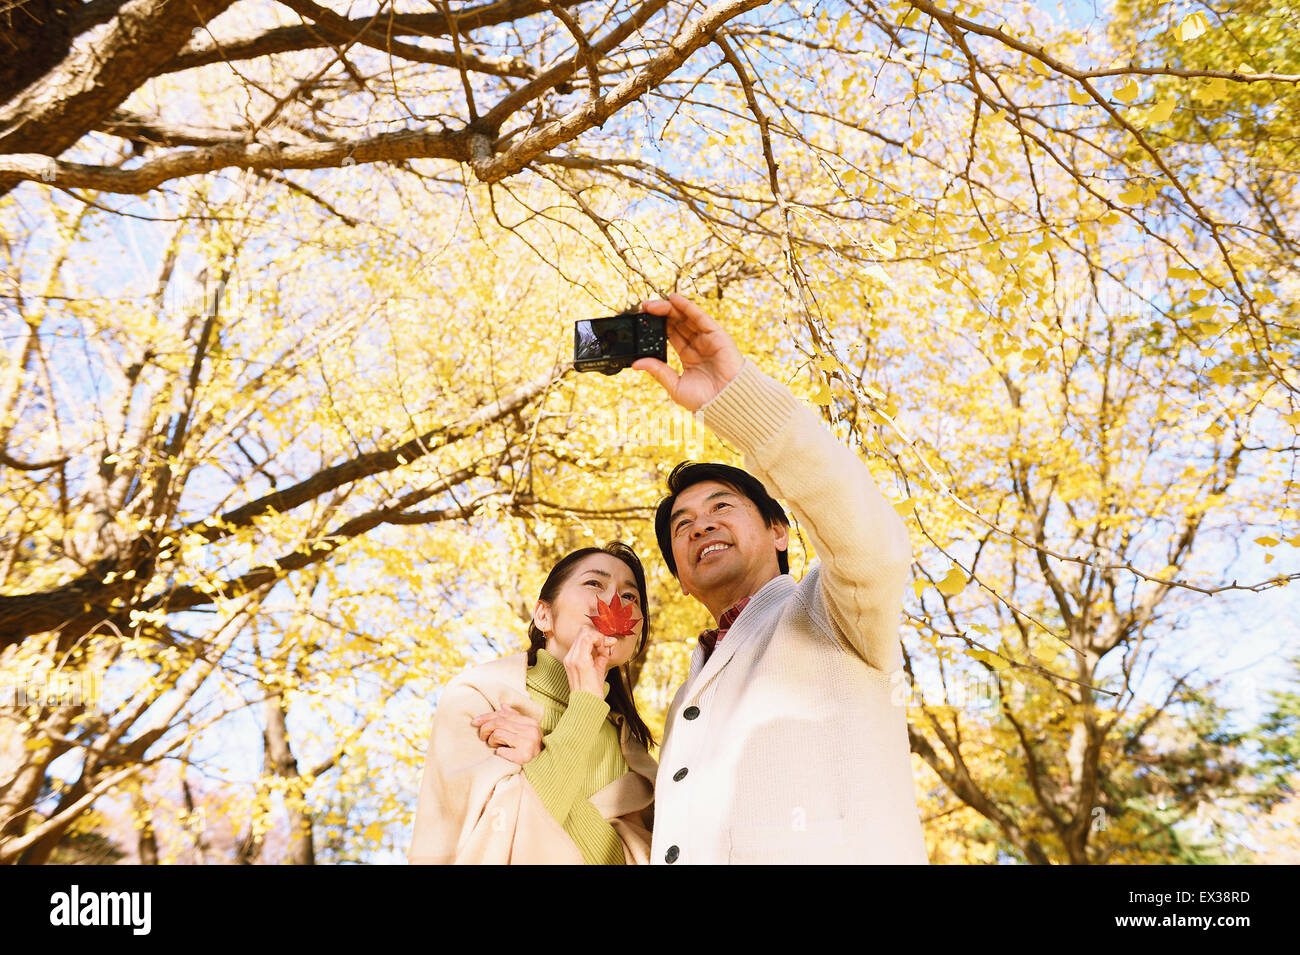 Senior coppia giapponese a scattare foto in un parco della città in autunno Foto Stock